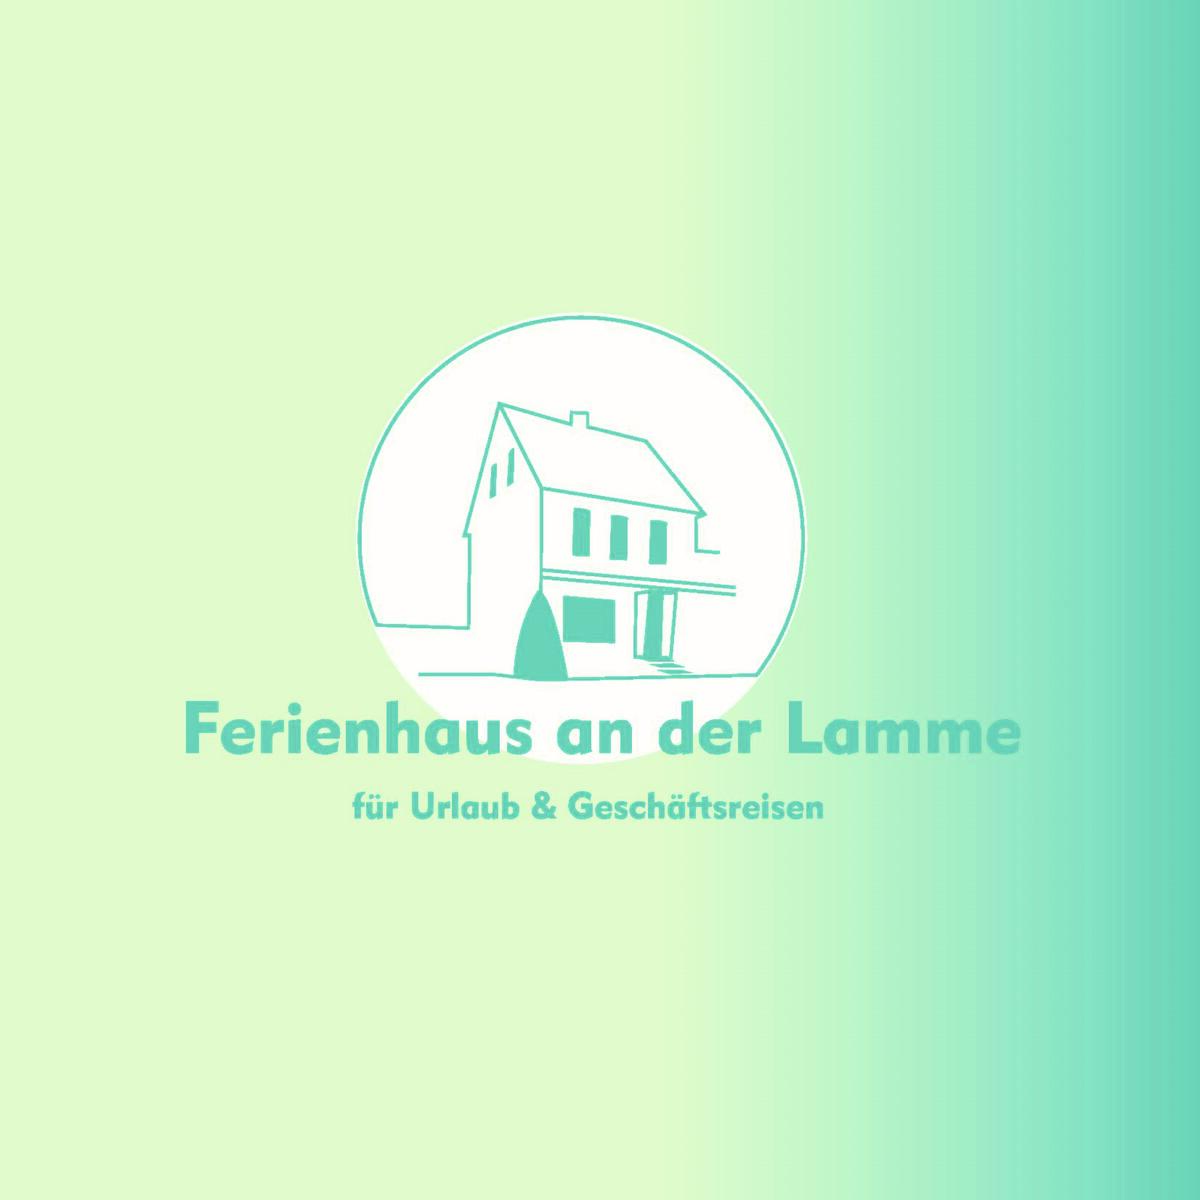 Bild vergrößern: Ferienhaus an der Lamme_Logo